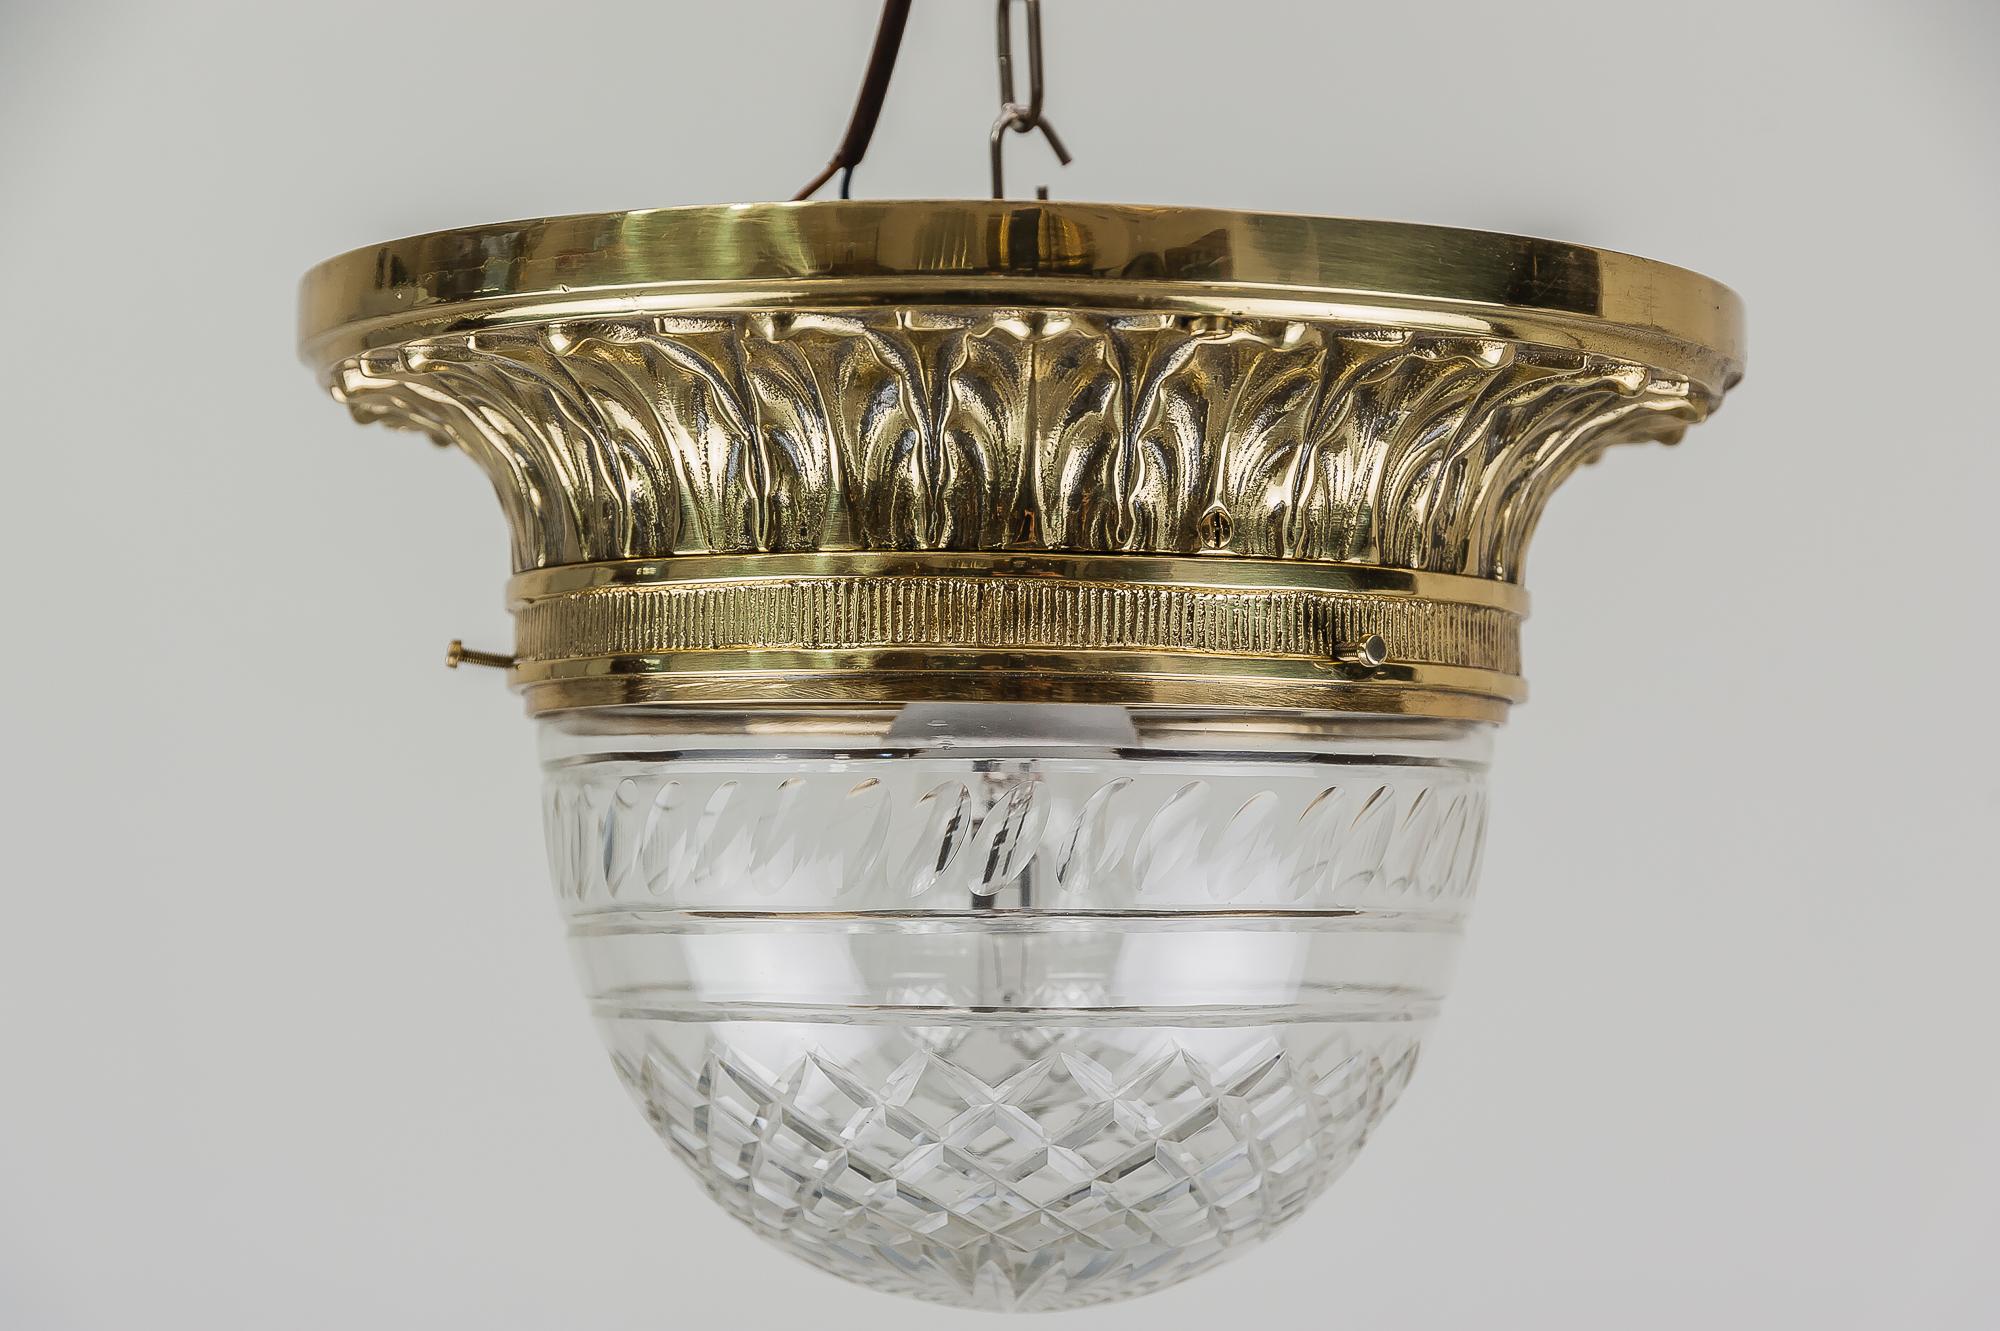 Austrian Solid Jugendstil Ceiling Lamp with Original Cut-Glass